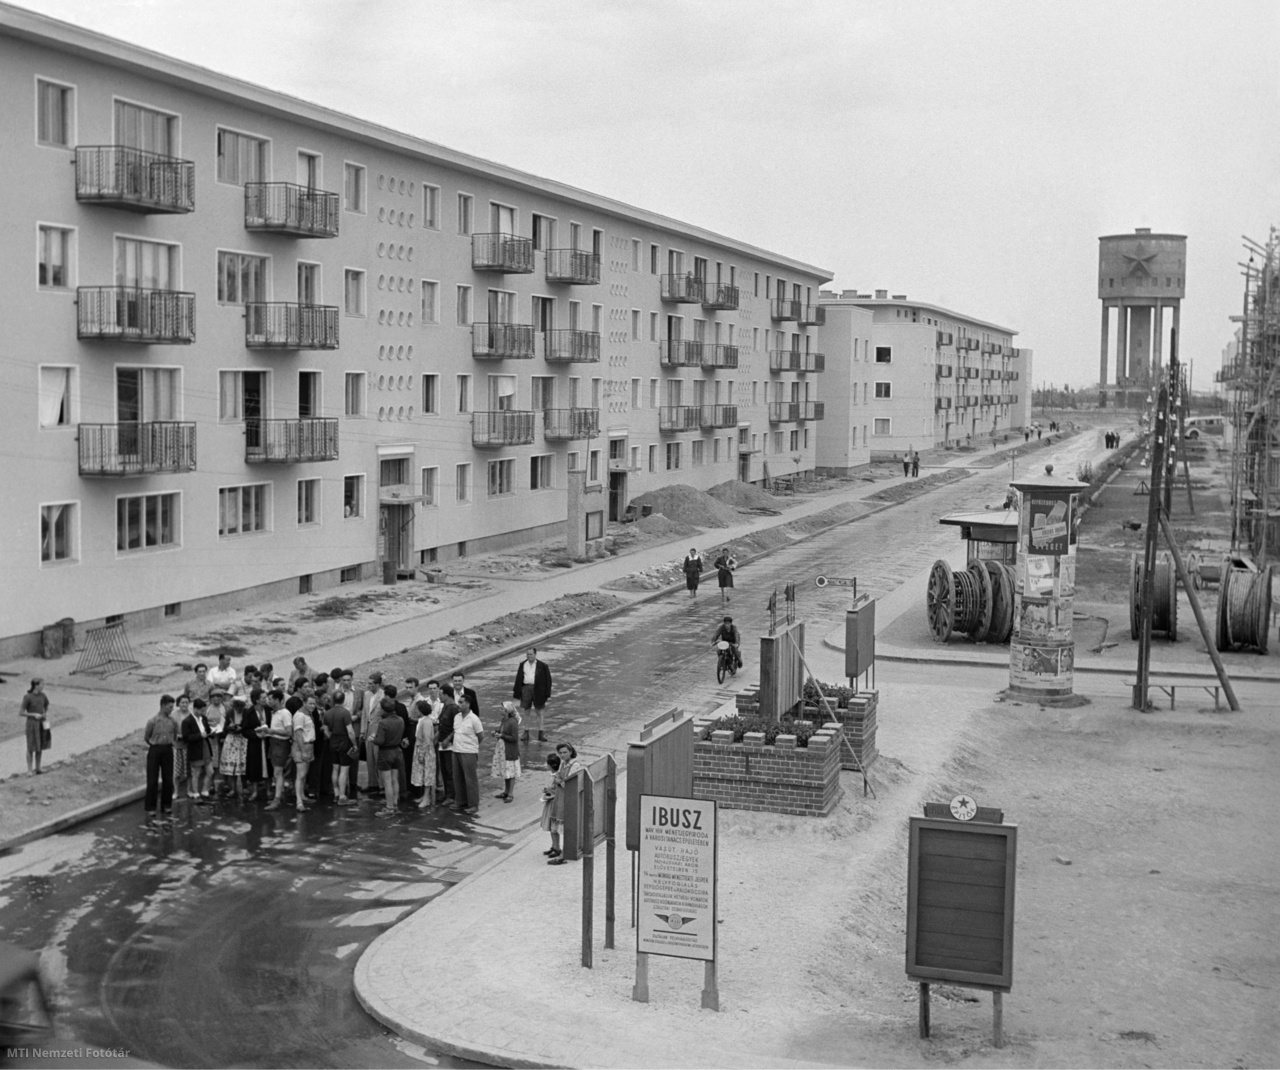 Sztálinváros, 1952. augusztus 10. A Szakszervezetek Országos Tanácsának (SZOT) francia és svéd vendégei megtekintik az épülő sztálinvárosi lakótelepet.